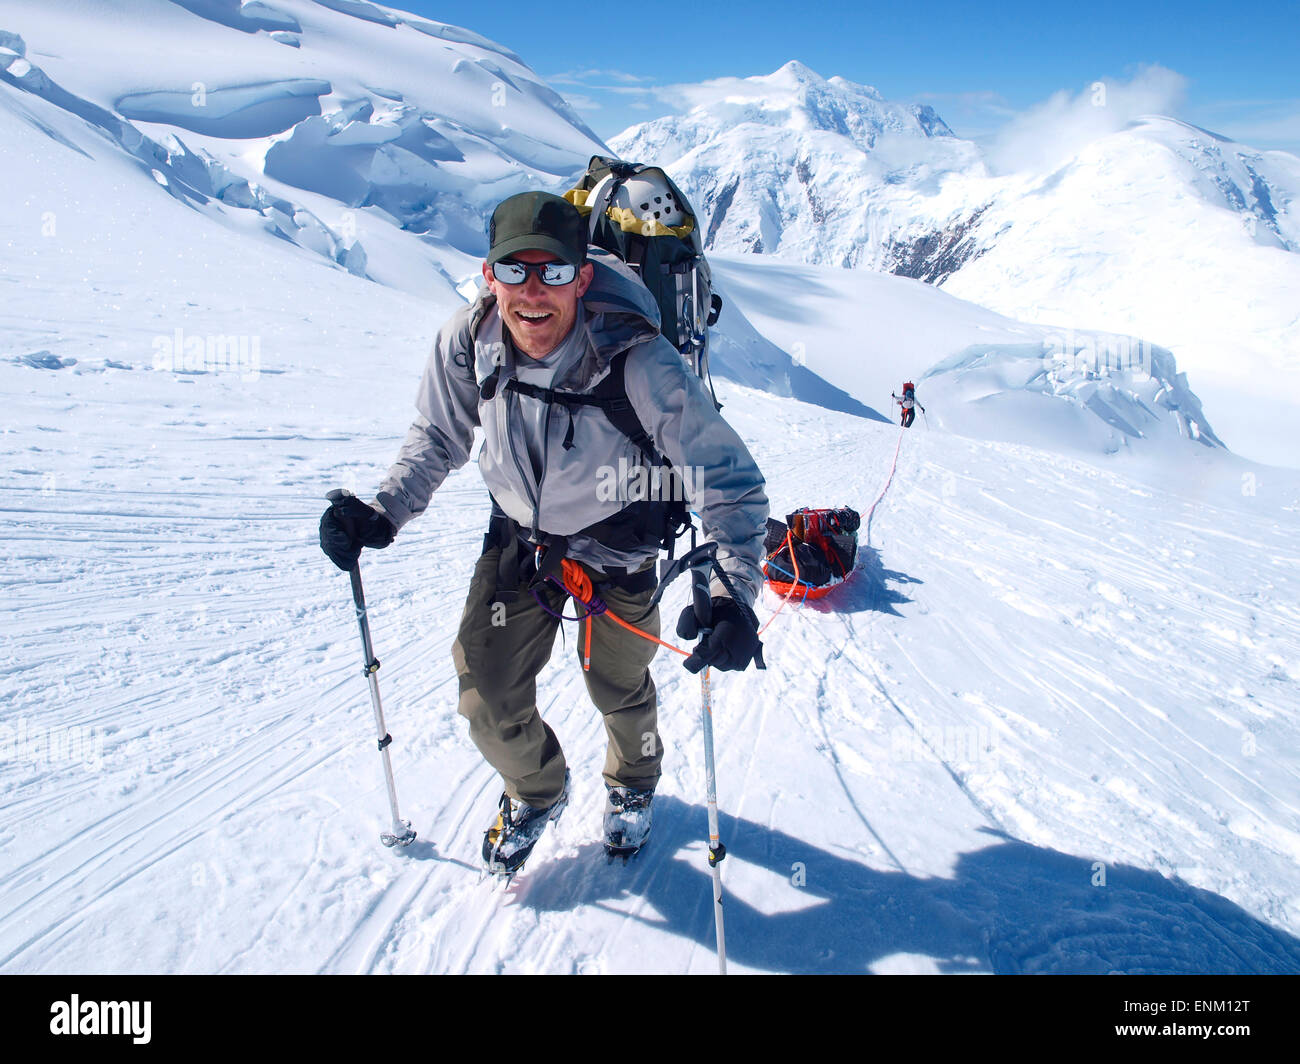 Berg-Ranger Brian Scheele auf diesem Weg zur Windy Corner am Mount McKinley, auch bekannt als Denali in Alaska. Er zieht einen Schlitten, der zusammen mit seinem schweren Rucksack all die Ausrüstung wie Zelte, Kleidung und Nahrung enthalten ist. Stockfoto